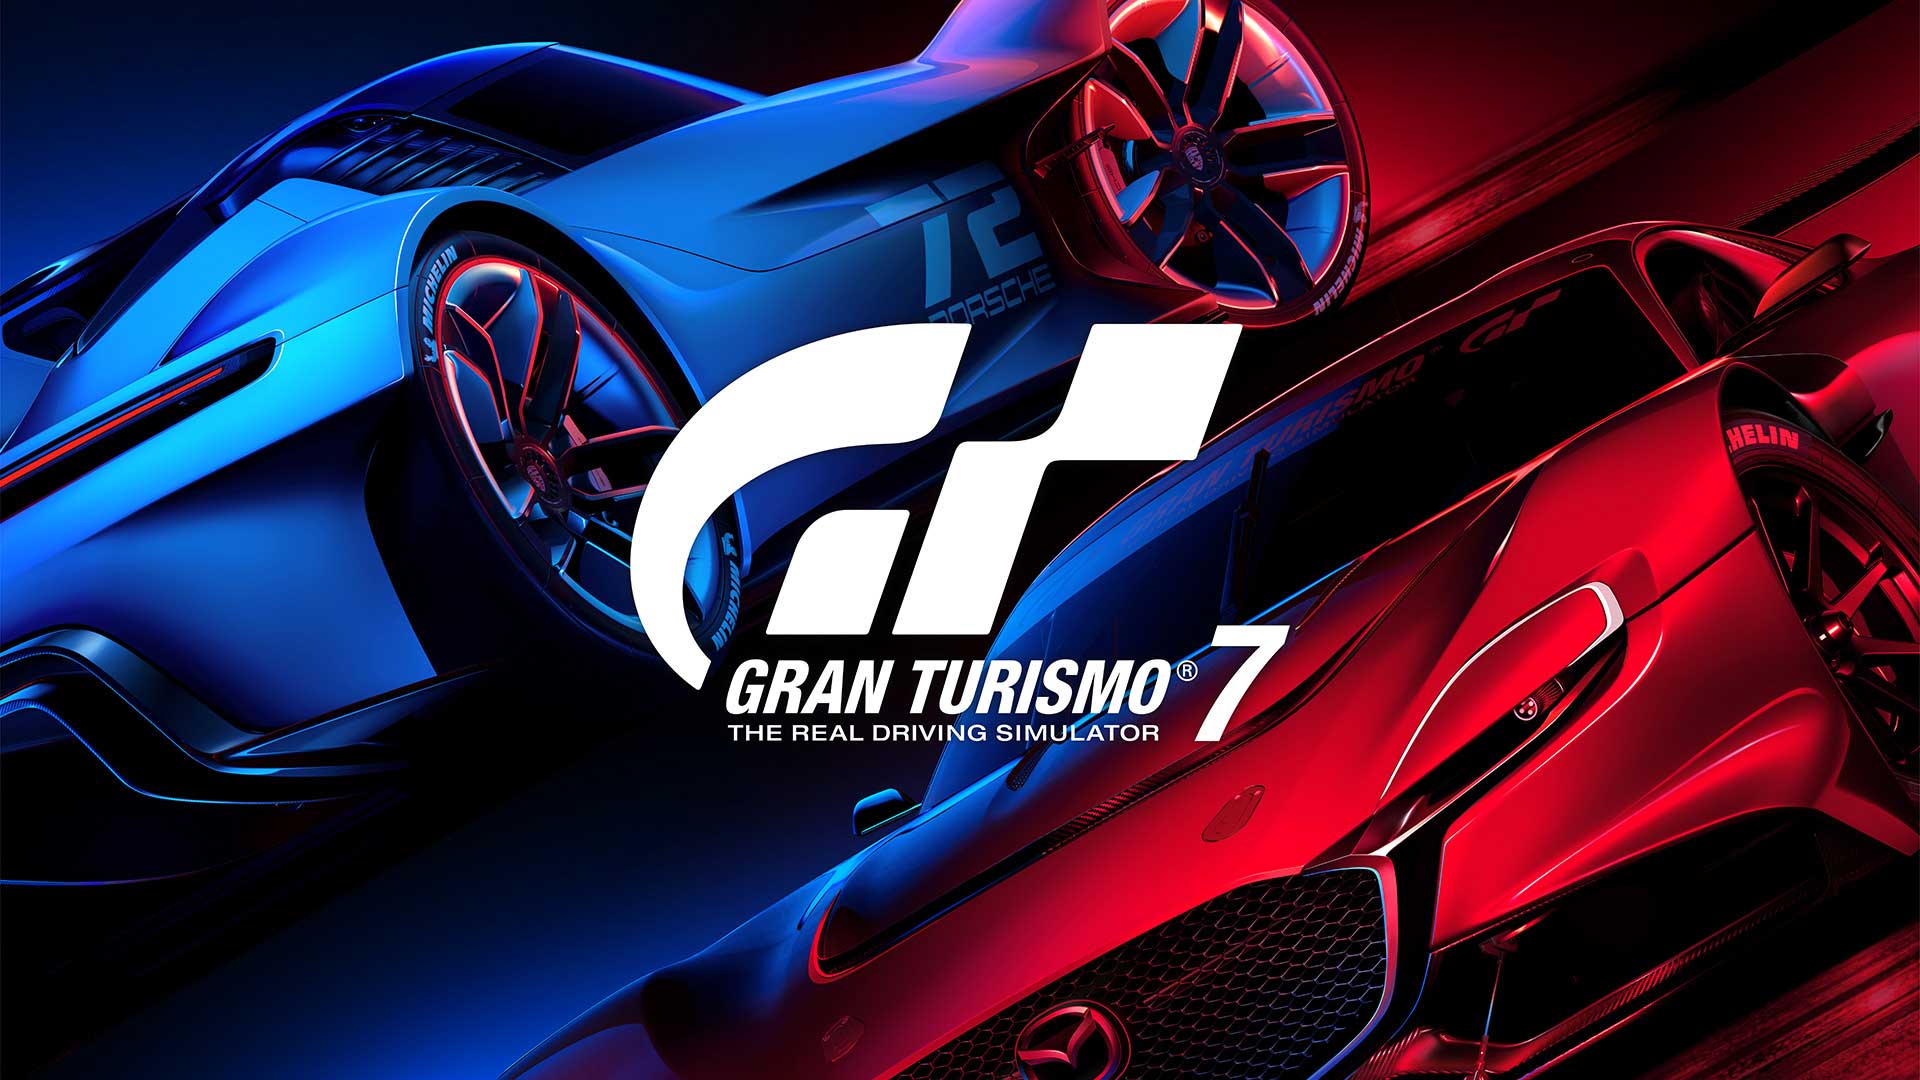 والپیپر رسمی آبی و قرمز بازی Gran Turismo 7، شبیه ساز اتومبیل رانی استودیو ژاپنی Polyphony Digital پلی استیشن سونی